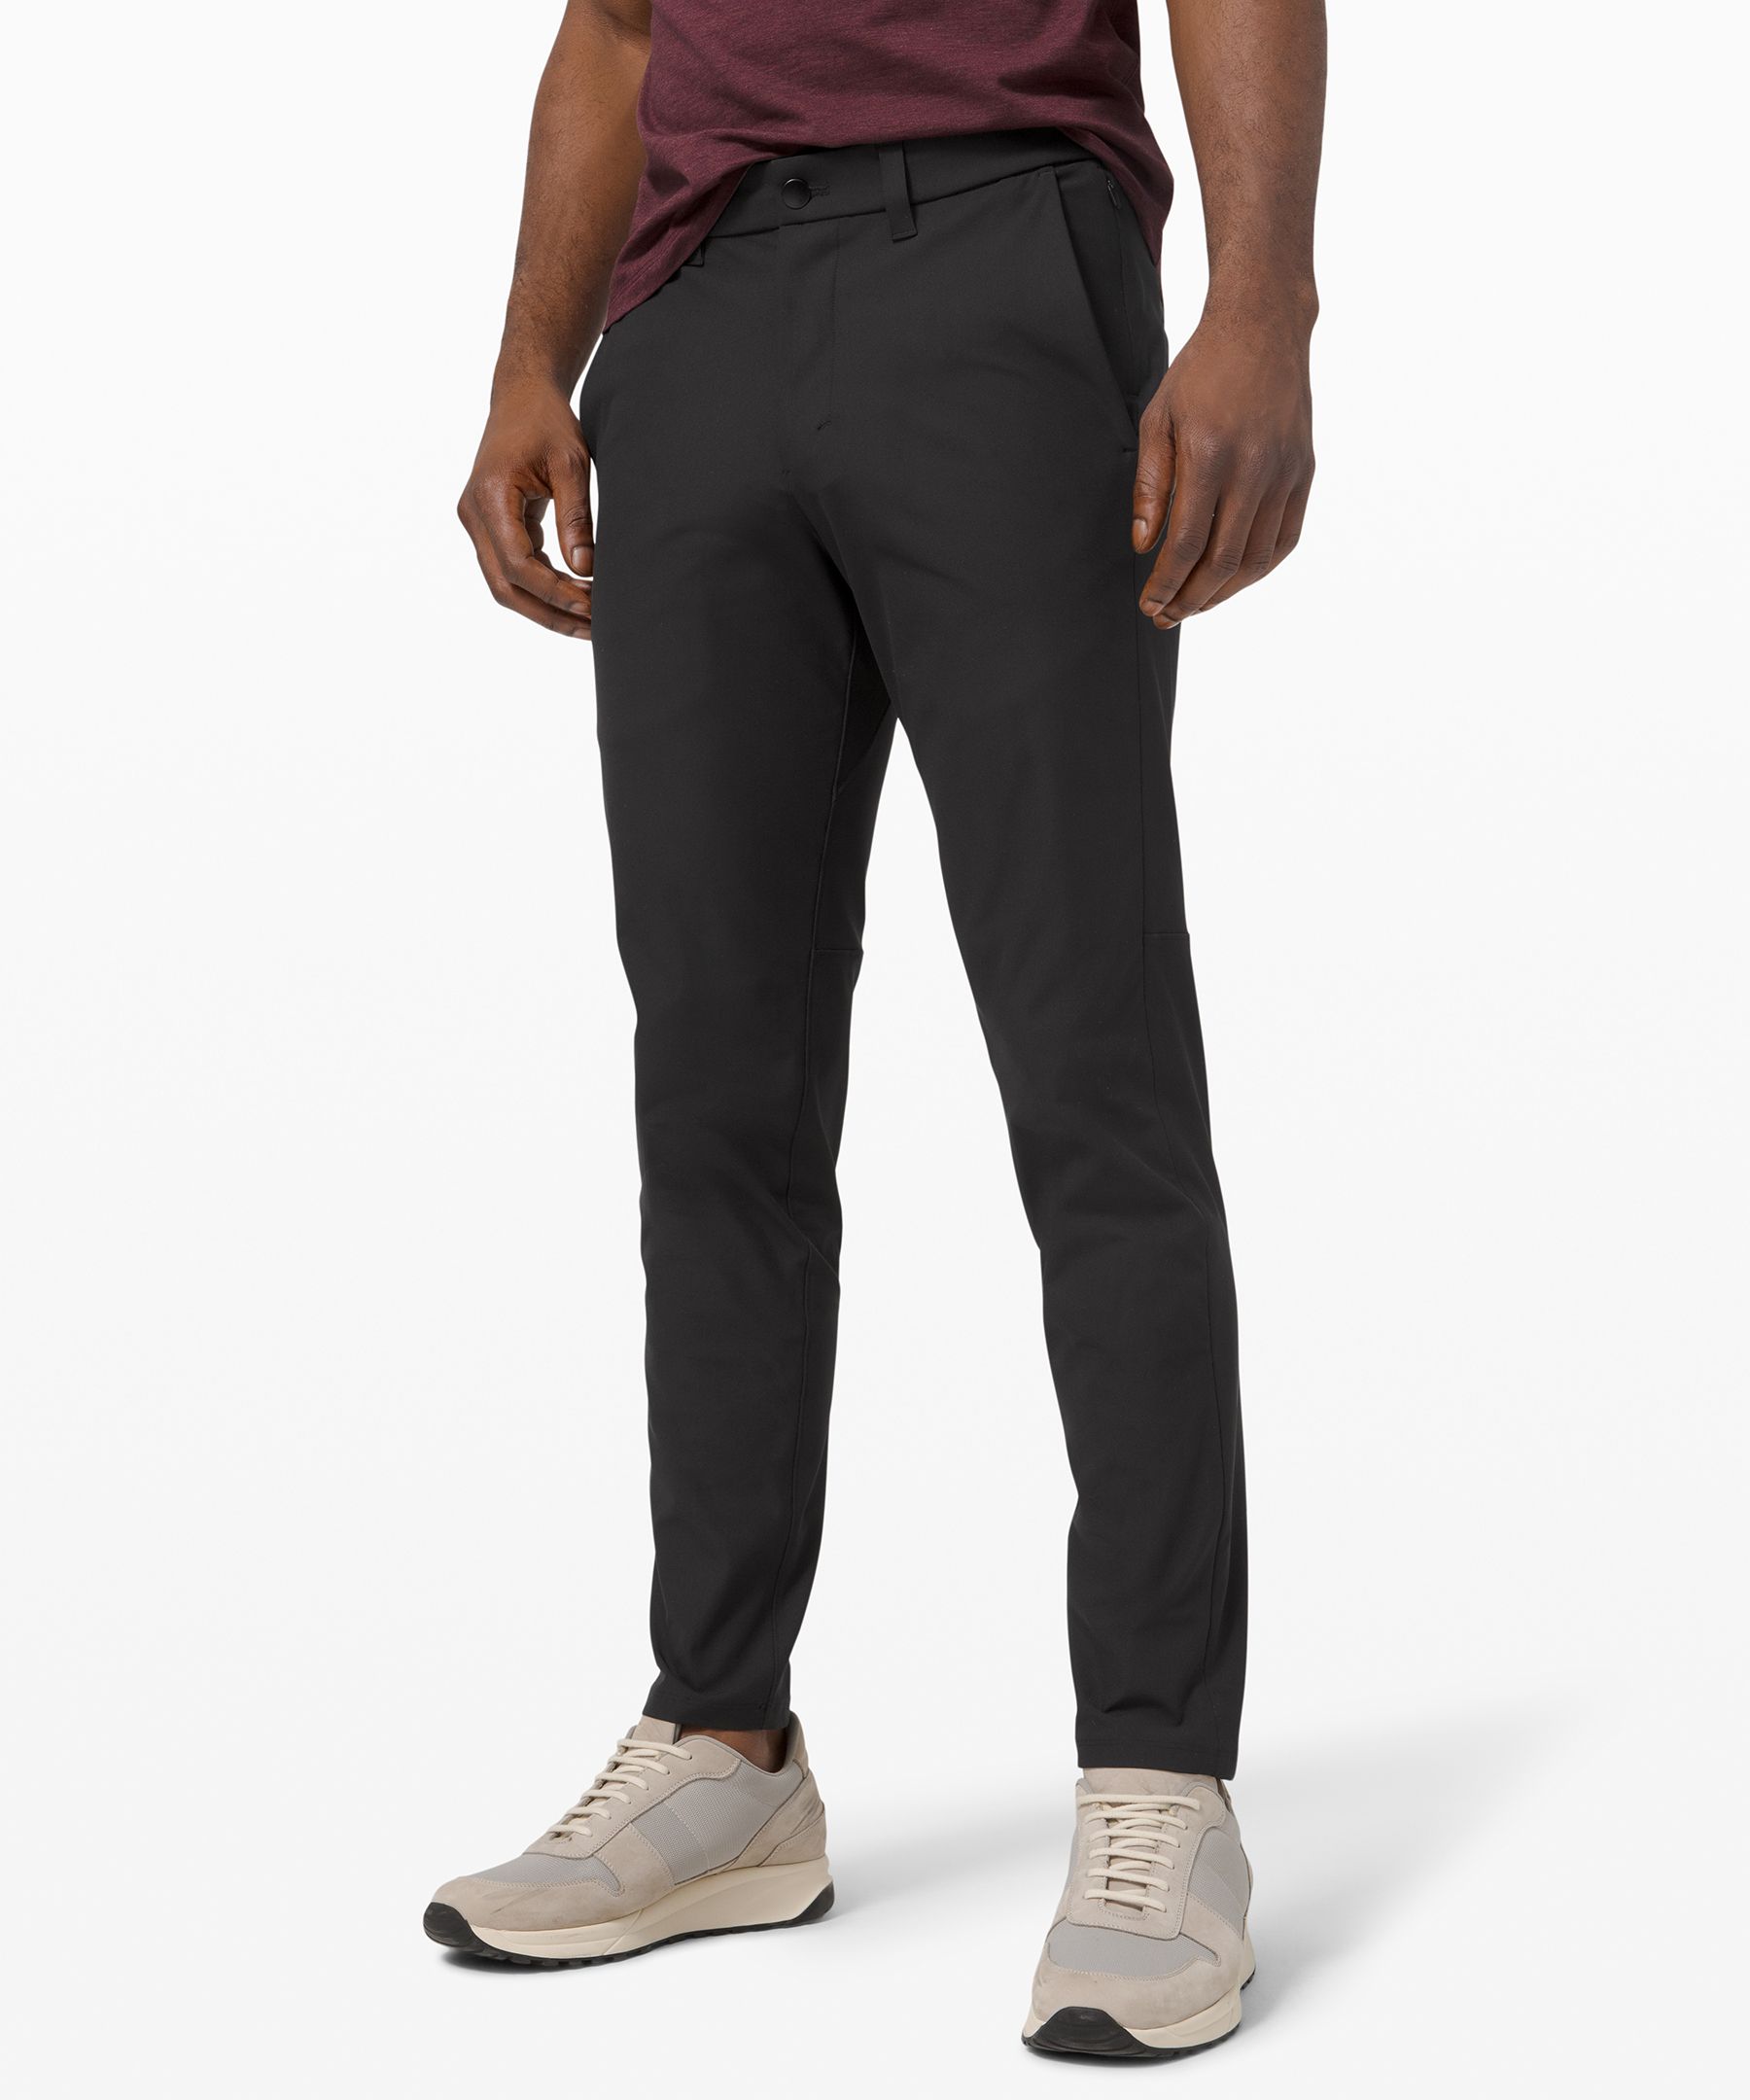 Lululemon Commission Slim-fit Pants 34" Warpstreme In Black